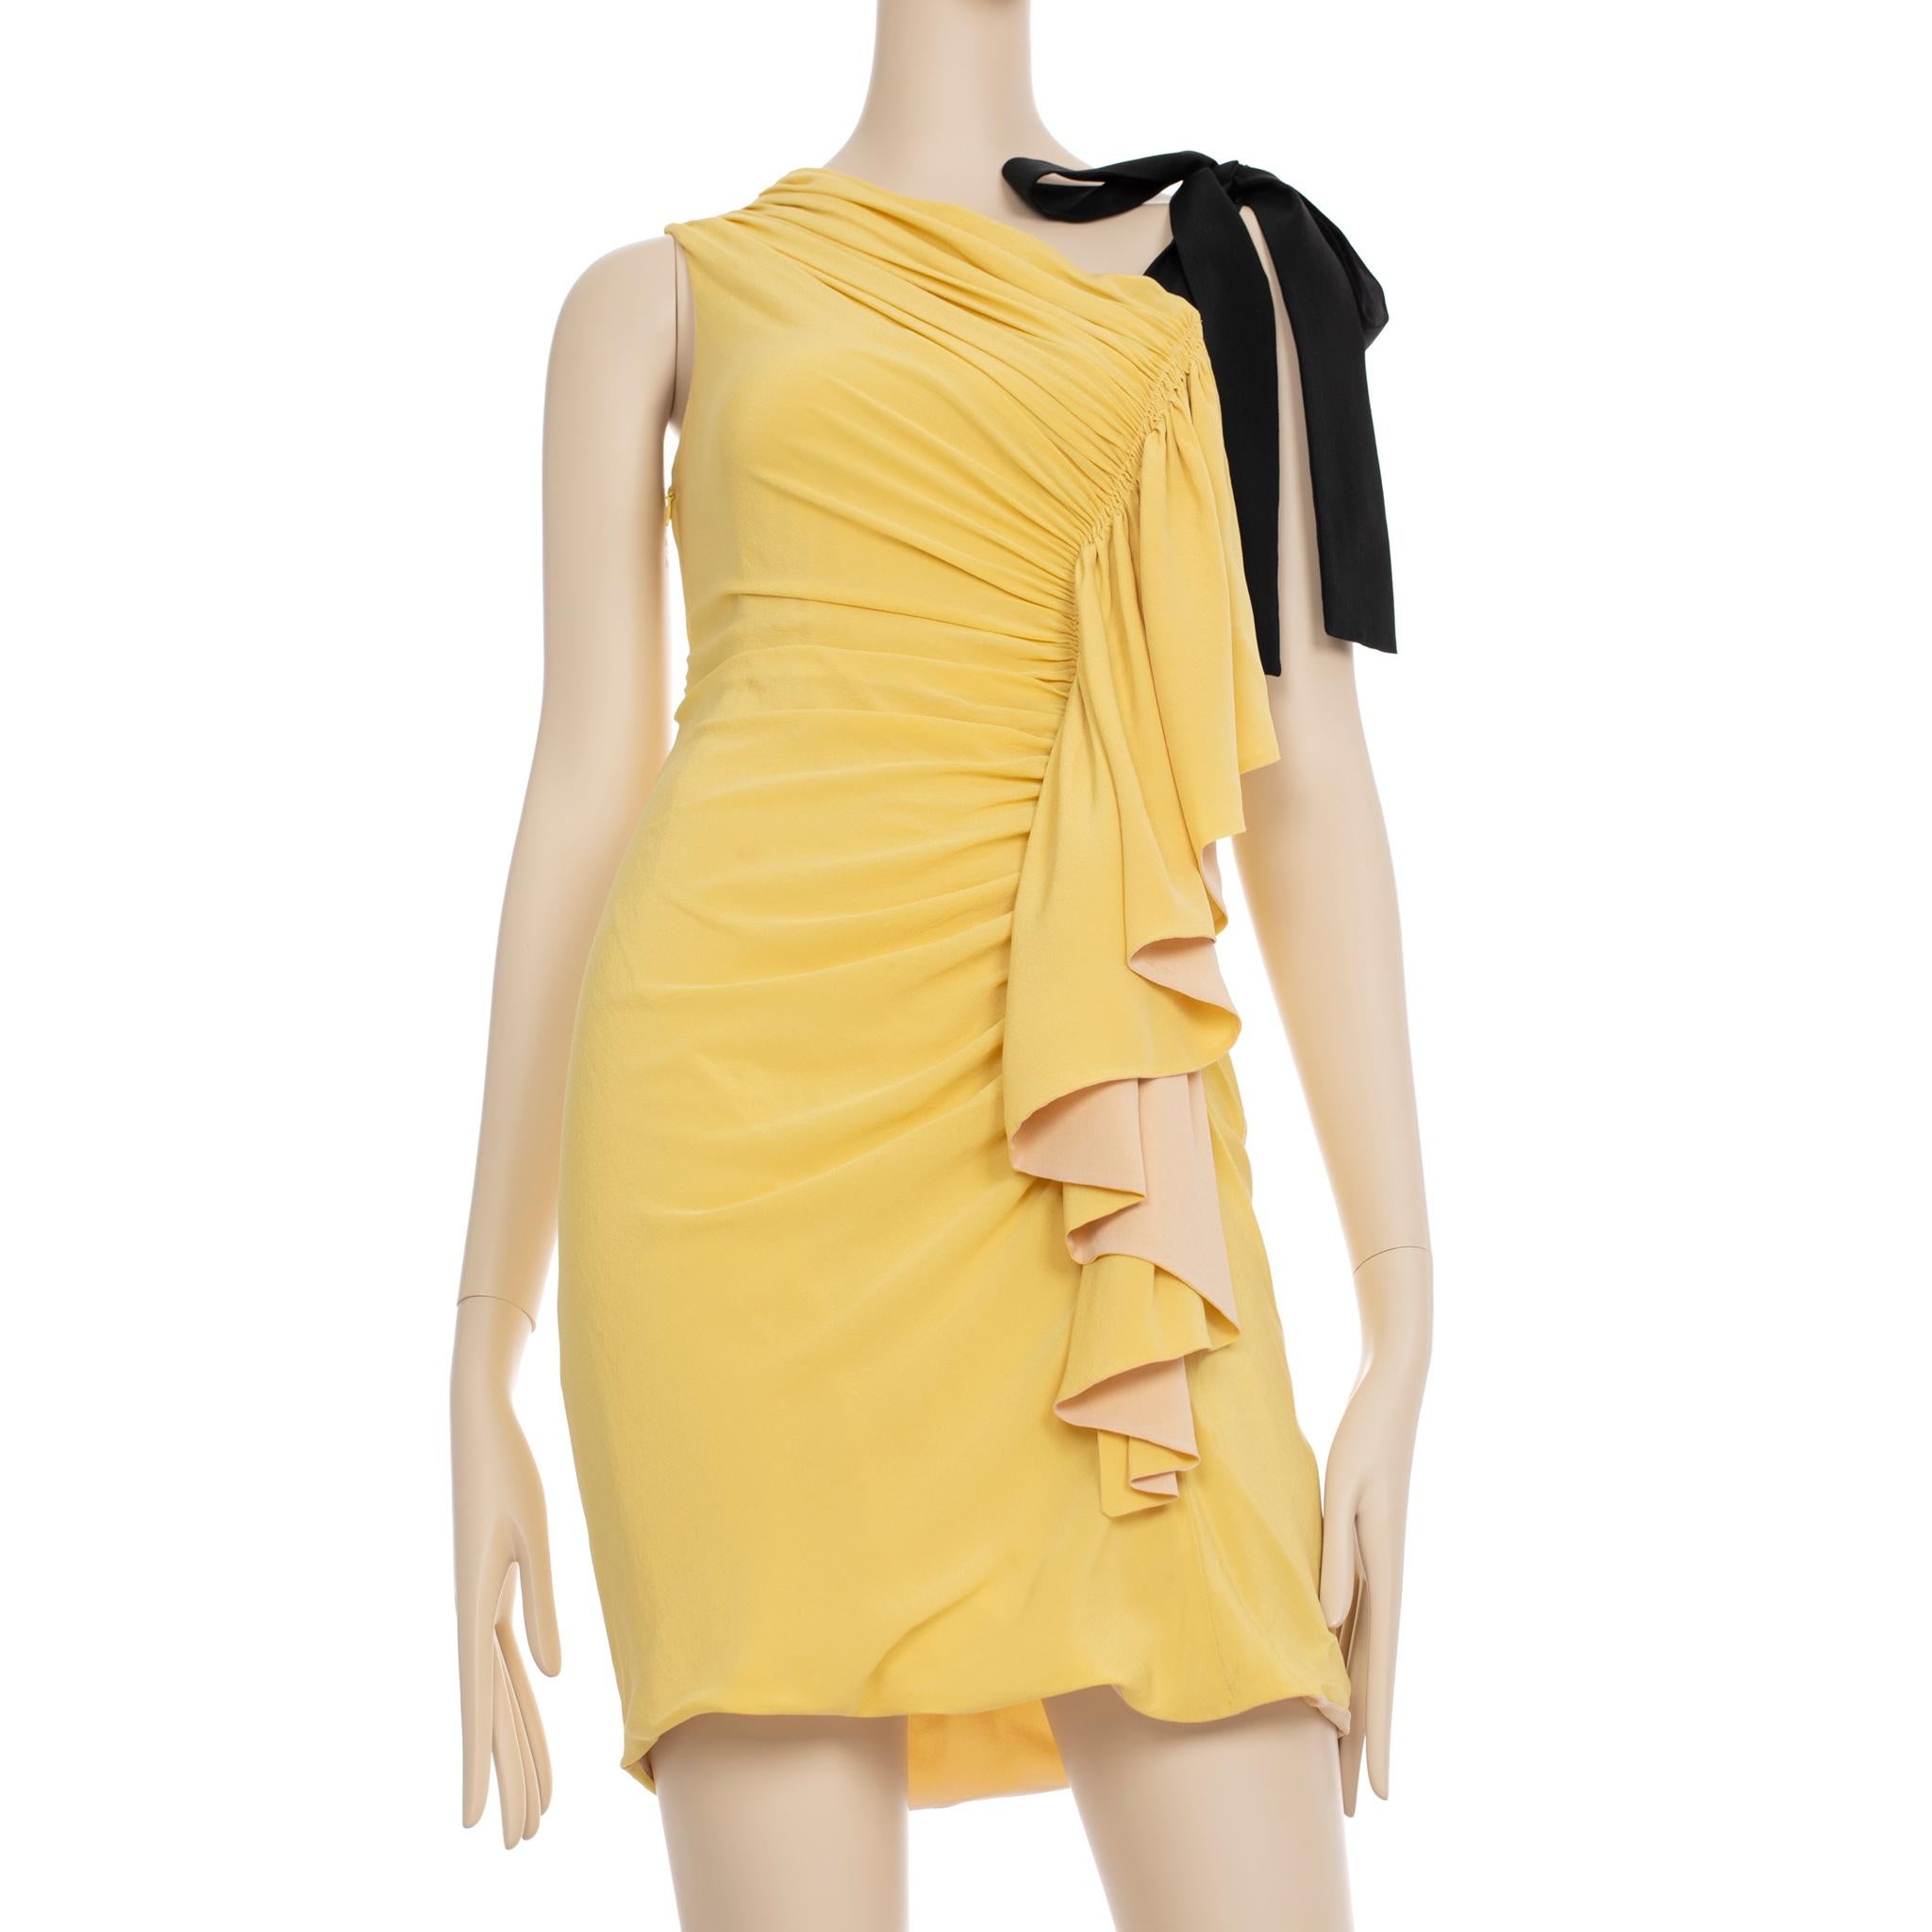 Dieses elegante Kleid von Fendi wurde aus zwei komplementären Gelb- und Nude-Tönen gefertigt und mit Rüschendetails versehen, die für subtile Struktur sorgen. Perfekt für sommerliche Cocktail-Events - mit diesem stilvollen Stück heben Sie sich von